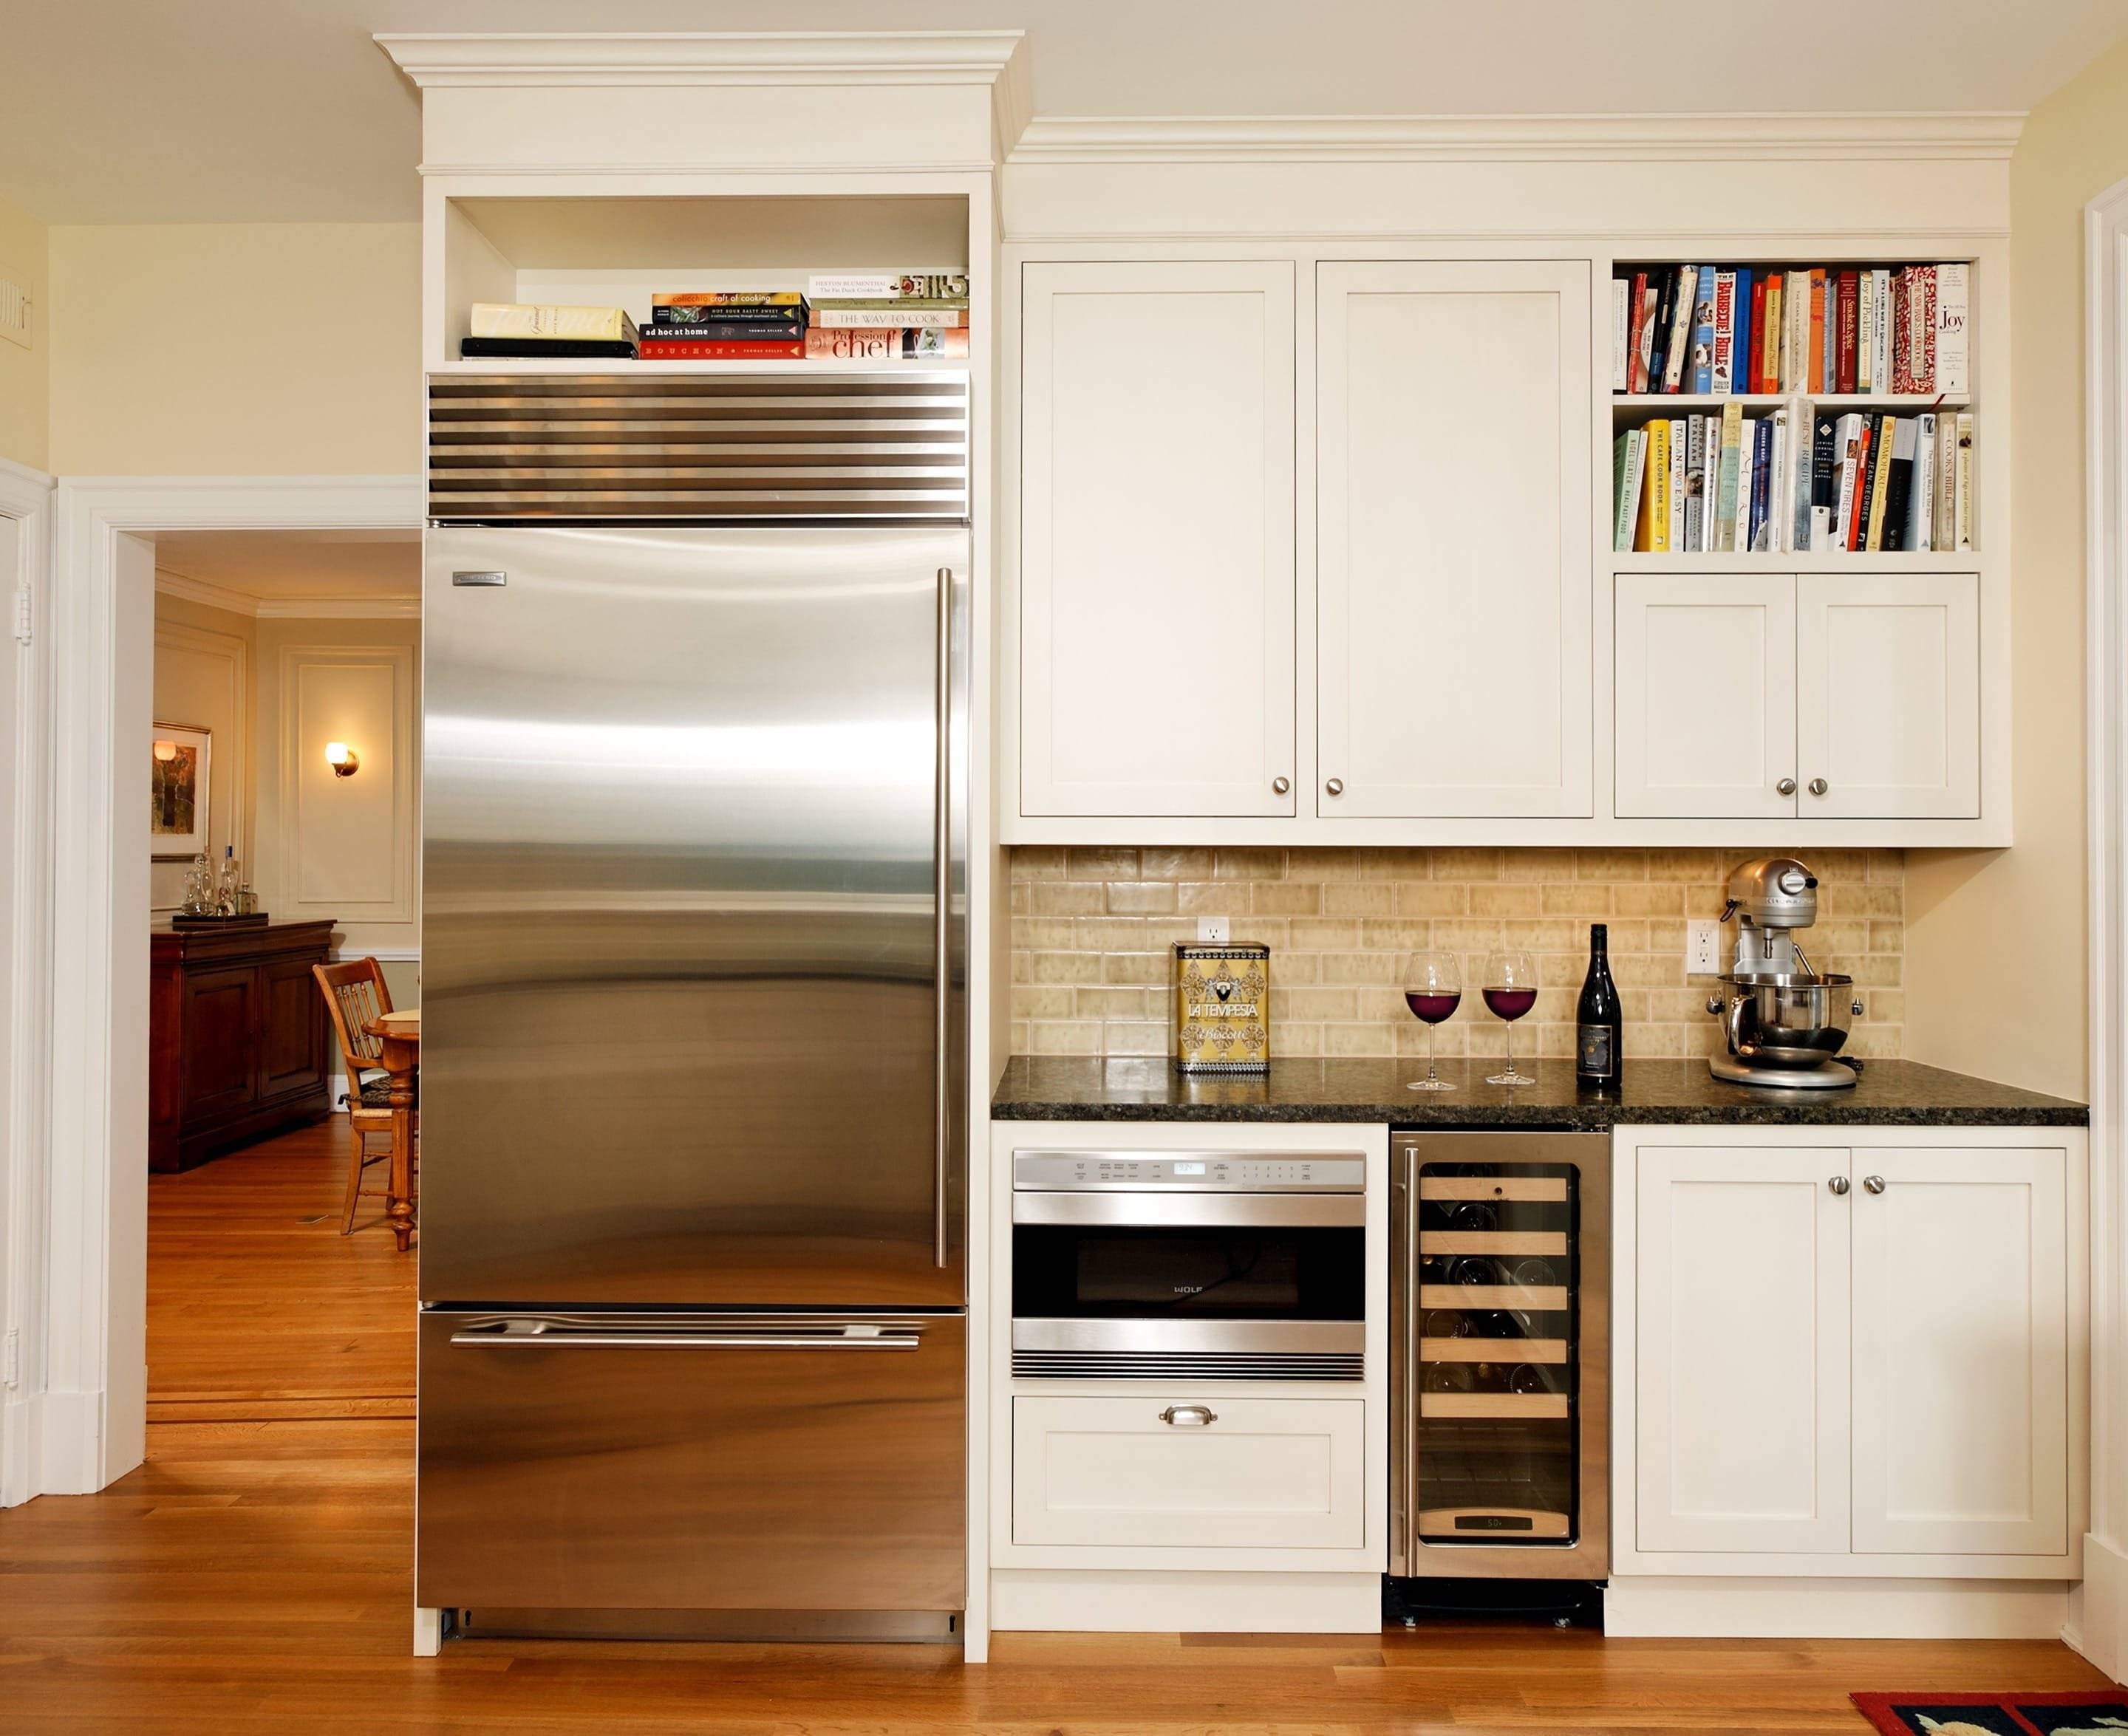 разместить холодильник в маленькой кухне